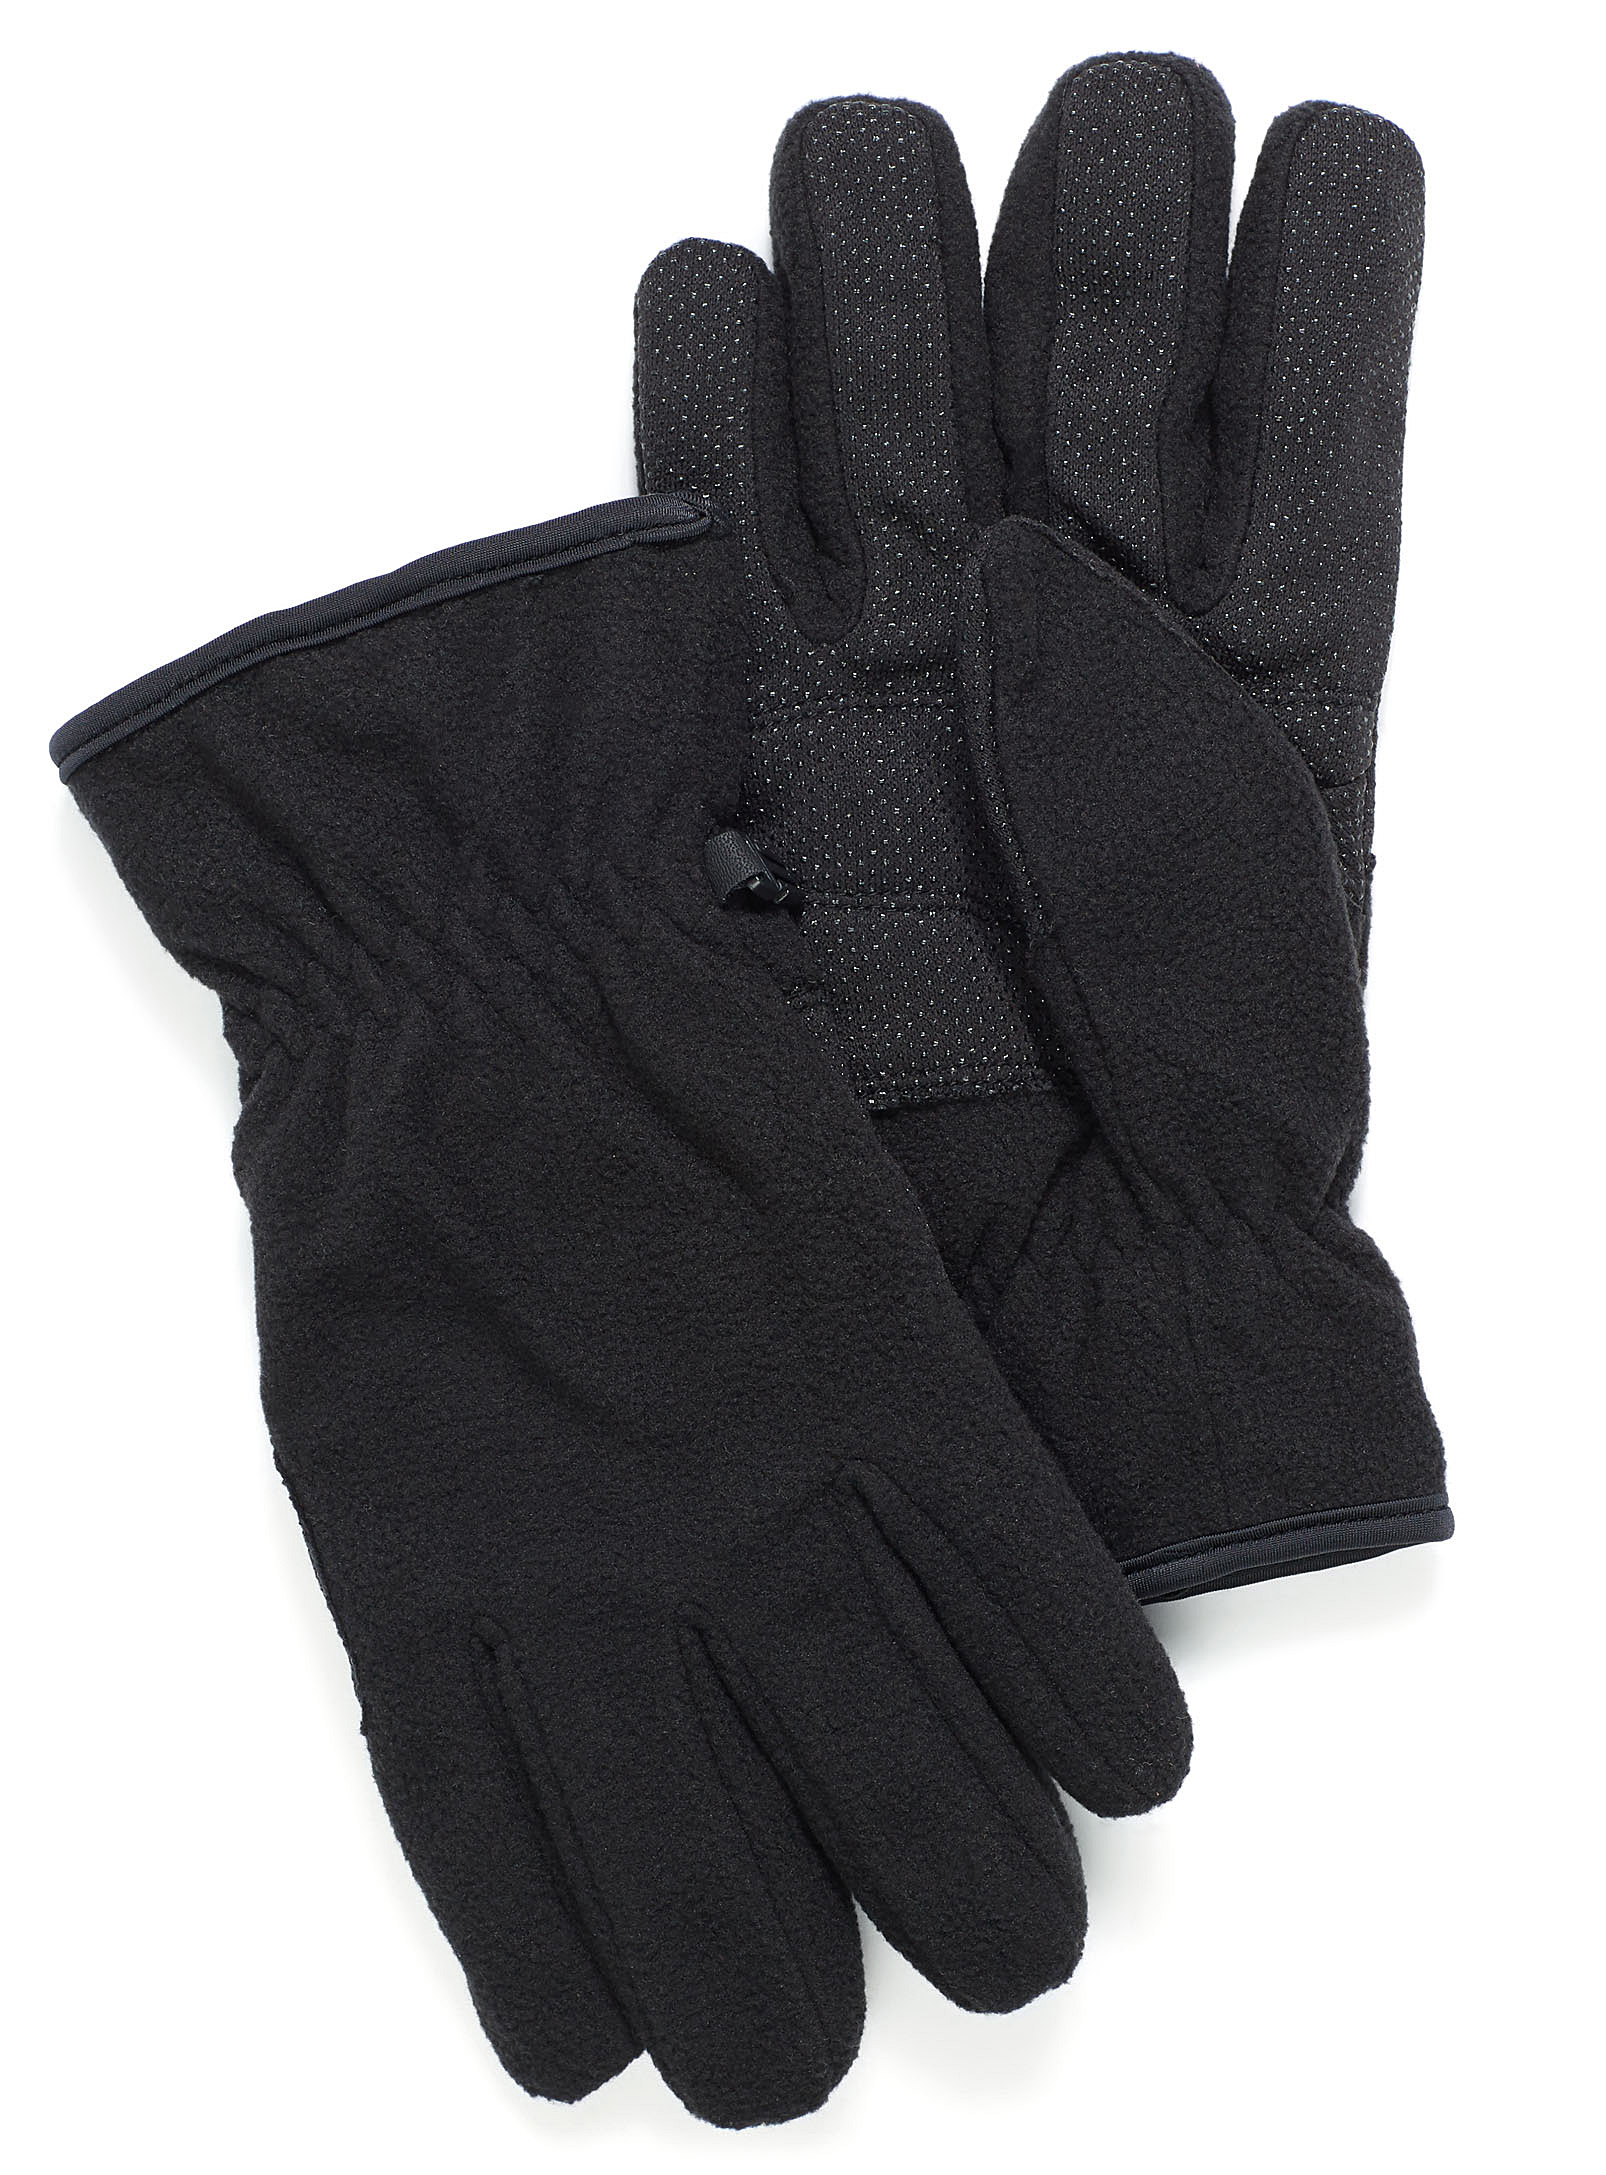 Auclair - Men's Polar fleece gloves